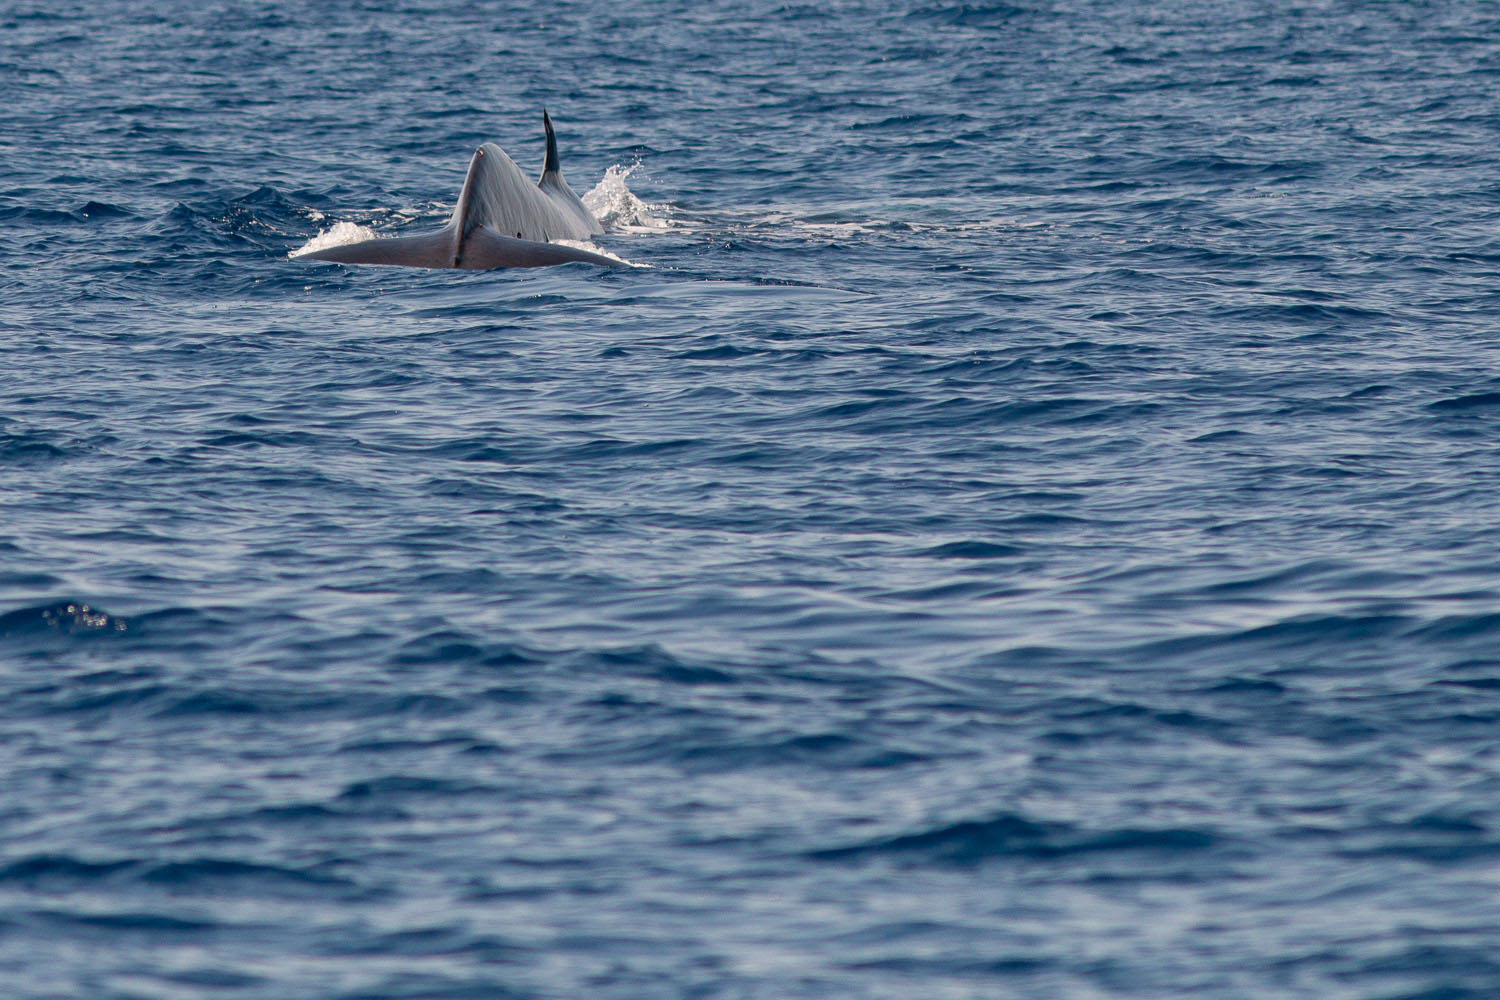 voyage scientifique - cetaces de mediterranee vers la corse a la voile 25